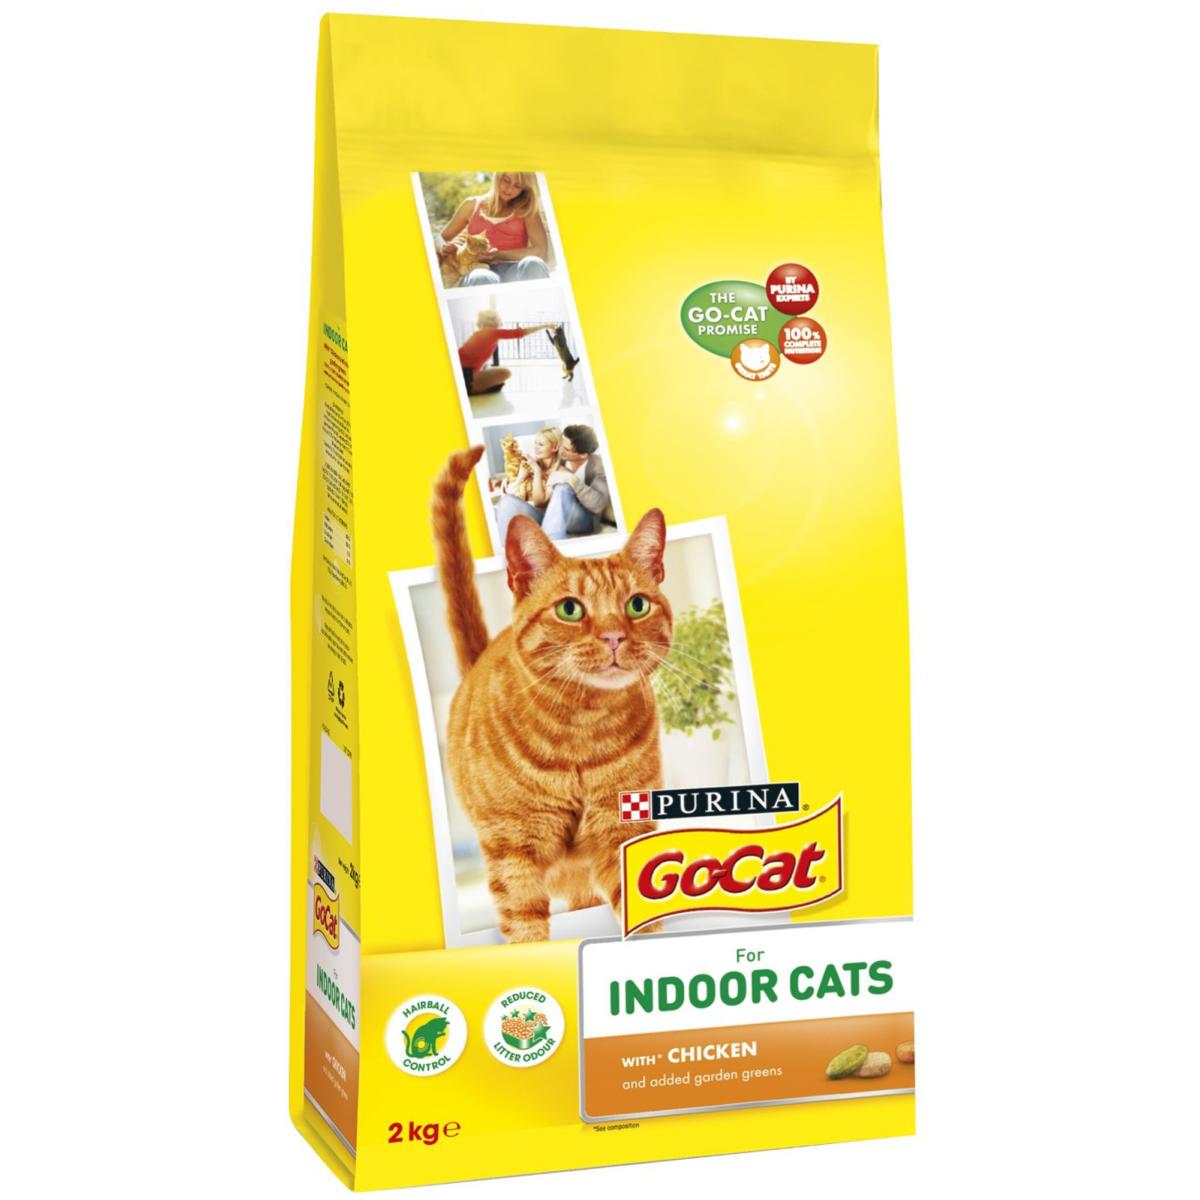 Go Cat Complete Dry Food Indoor with Chicken & added Garden Greens 2kg